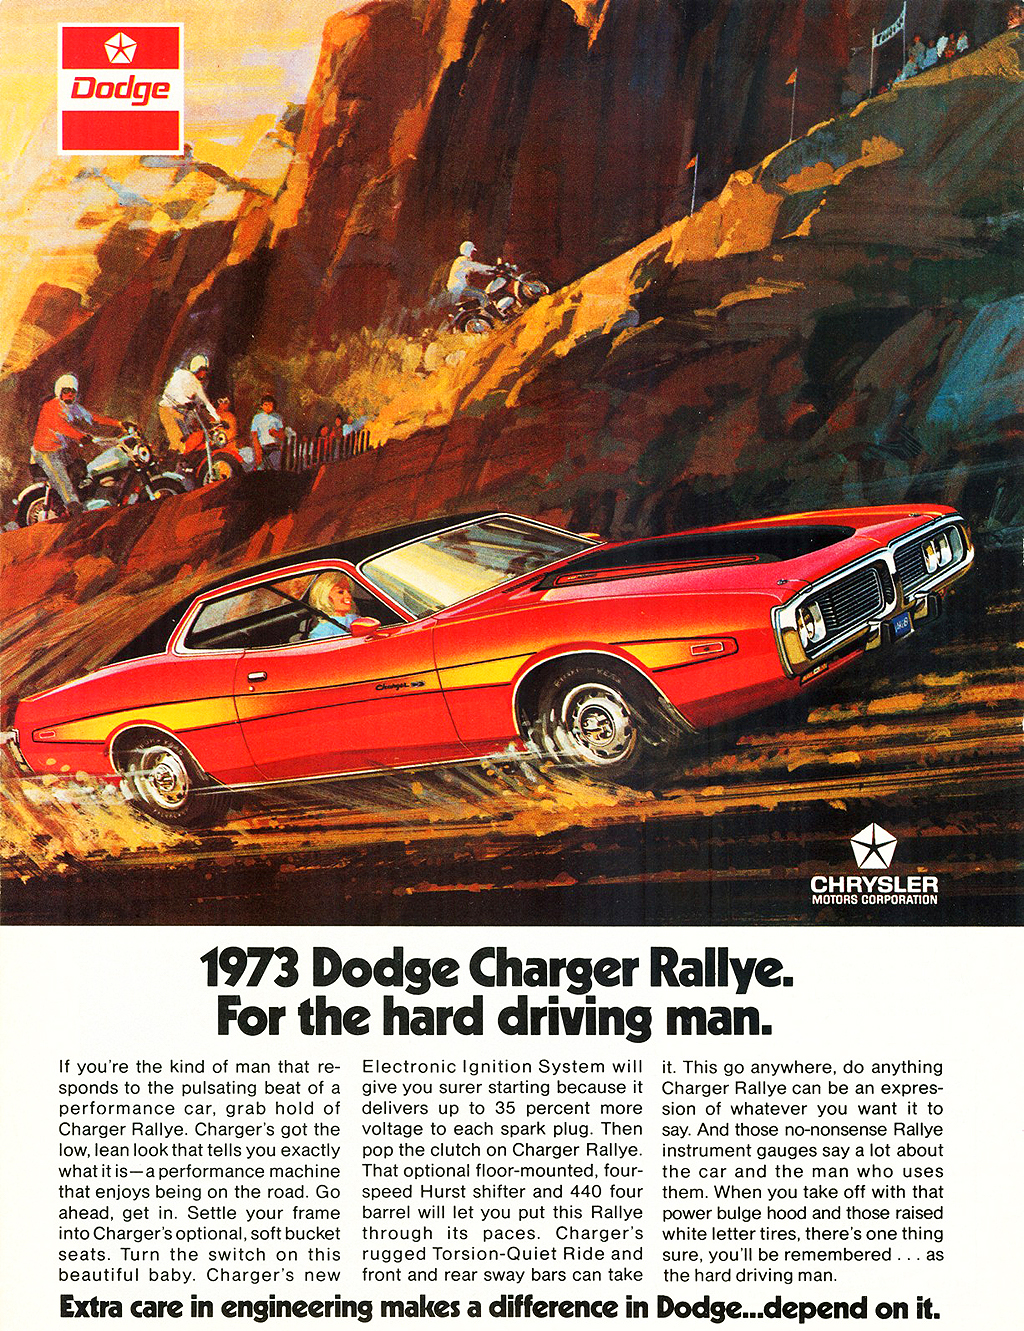 1973 Dodge Charger Rallye Edition